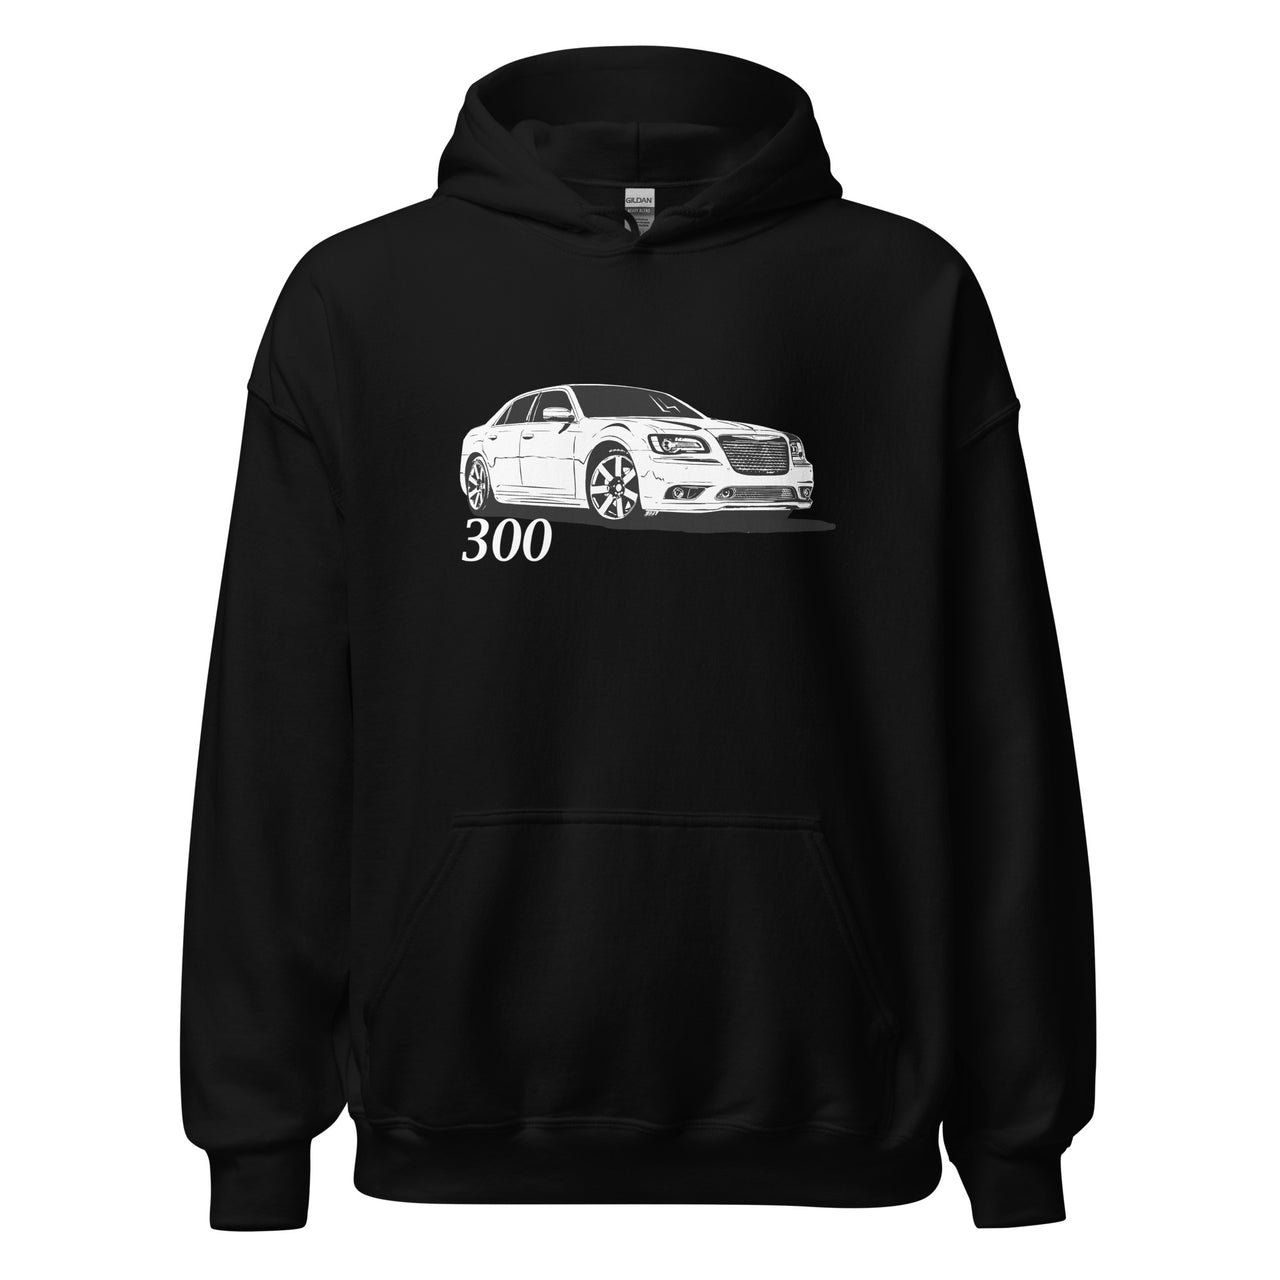 2011- Up Chrysler 300 Hoodie Sweatshirt